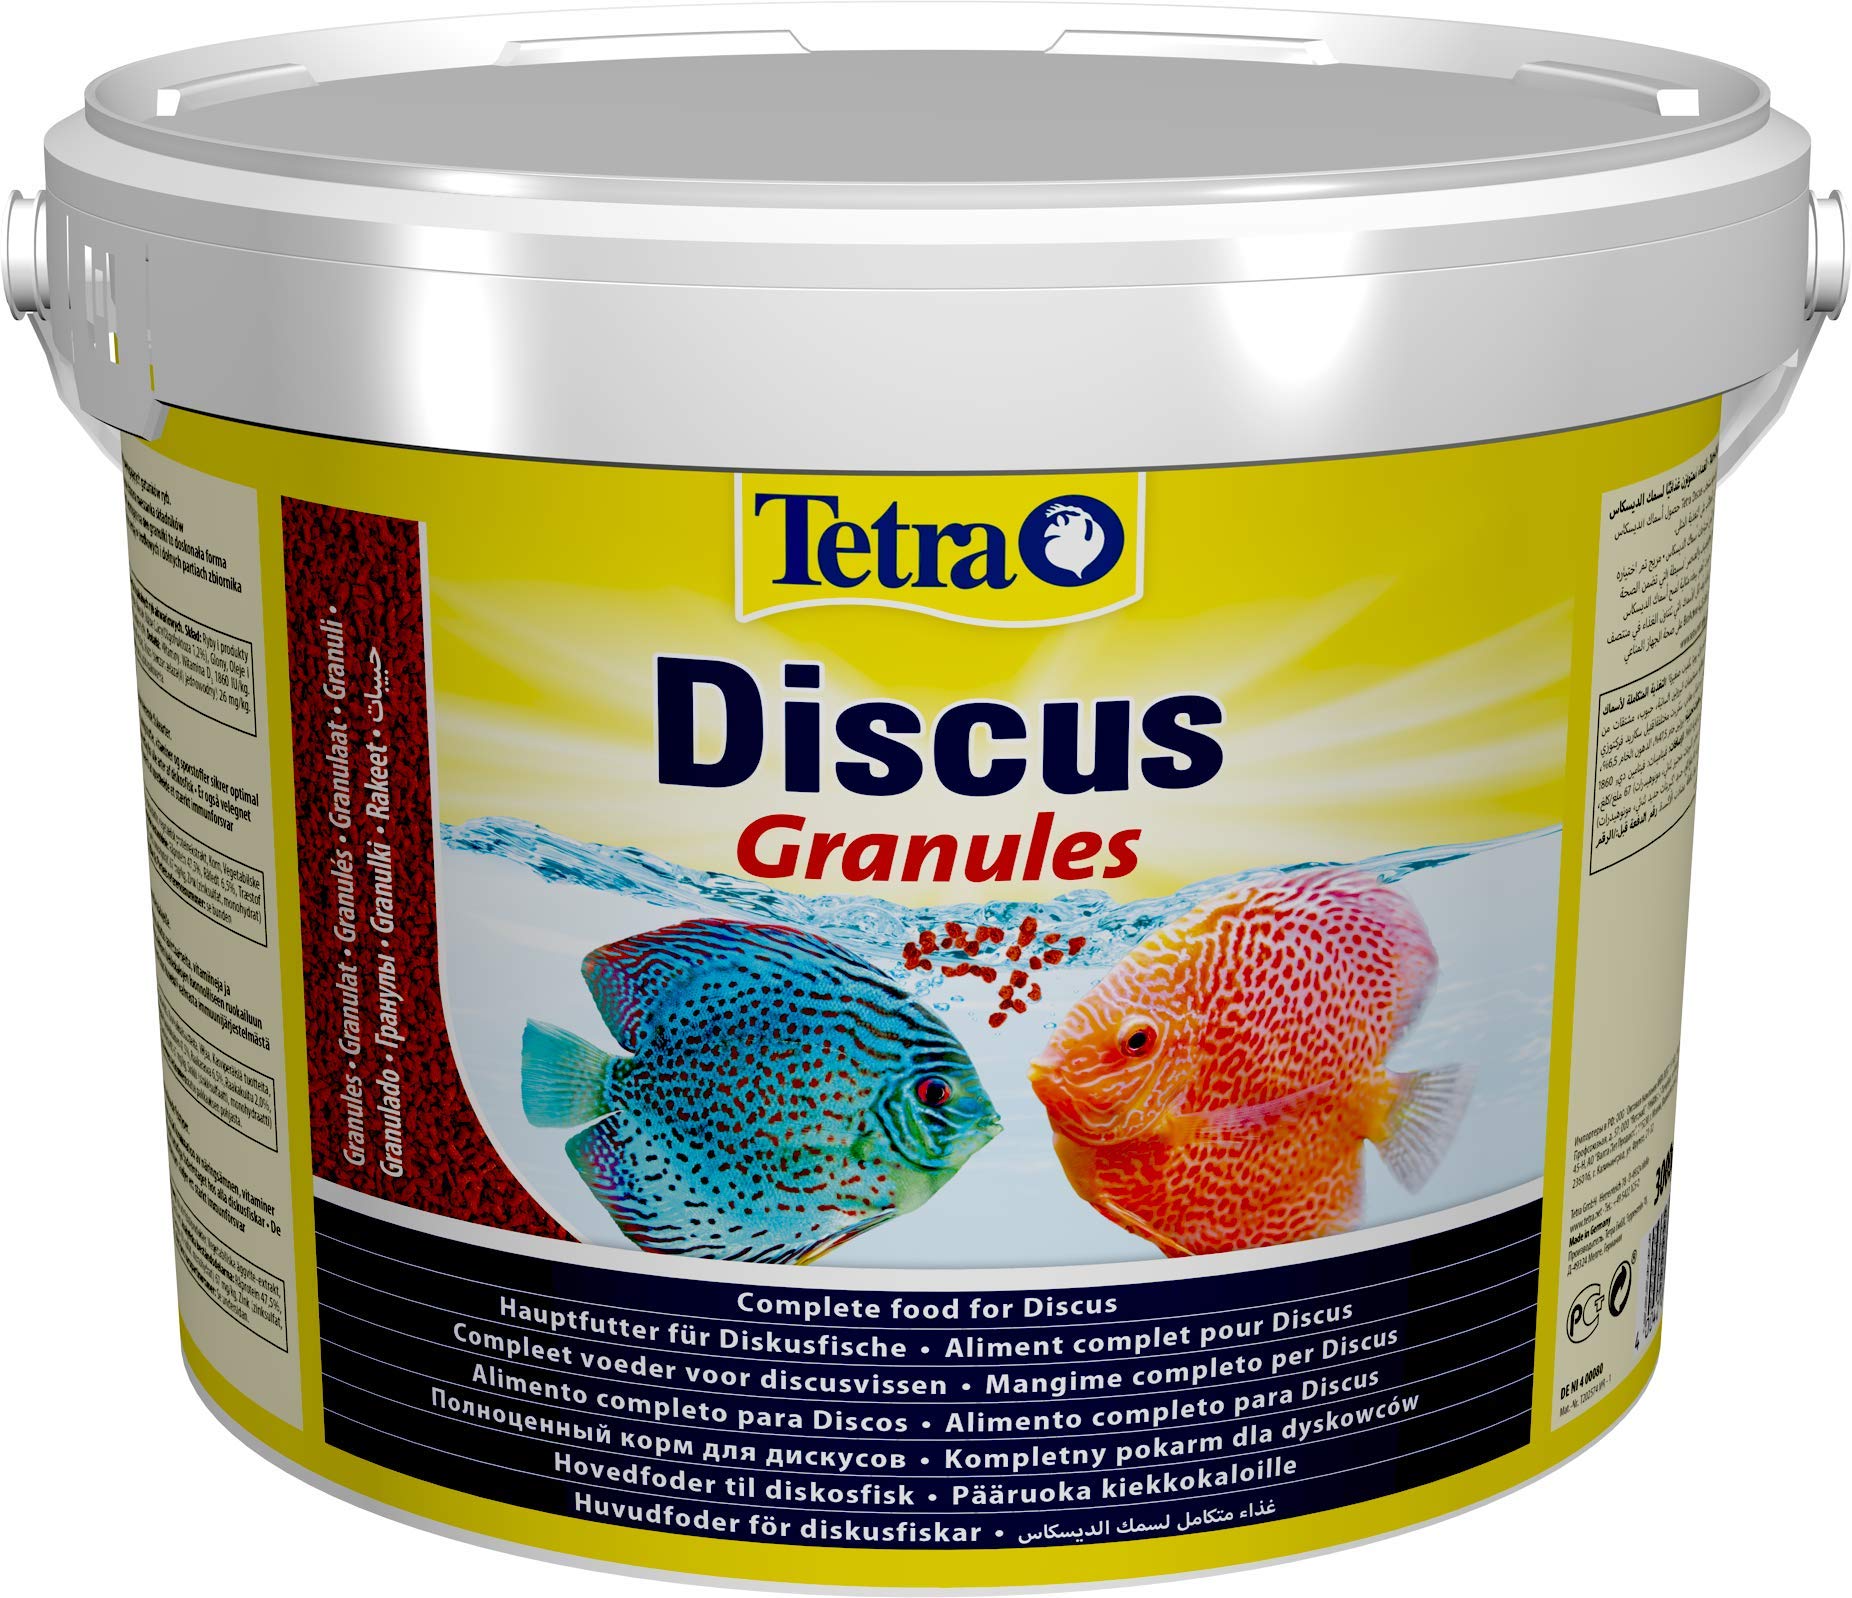 Tetra Discus Granules - Fischfutter für alle Diskusfische, fördert Gesundheit, Farbenpracht und Wachstum, 10 L Eimer